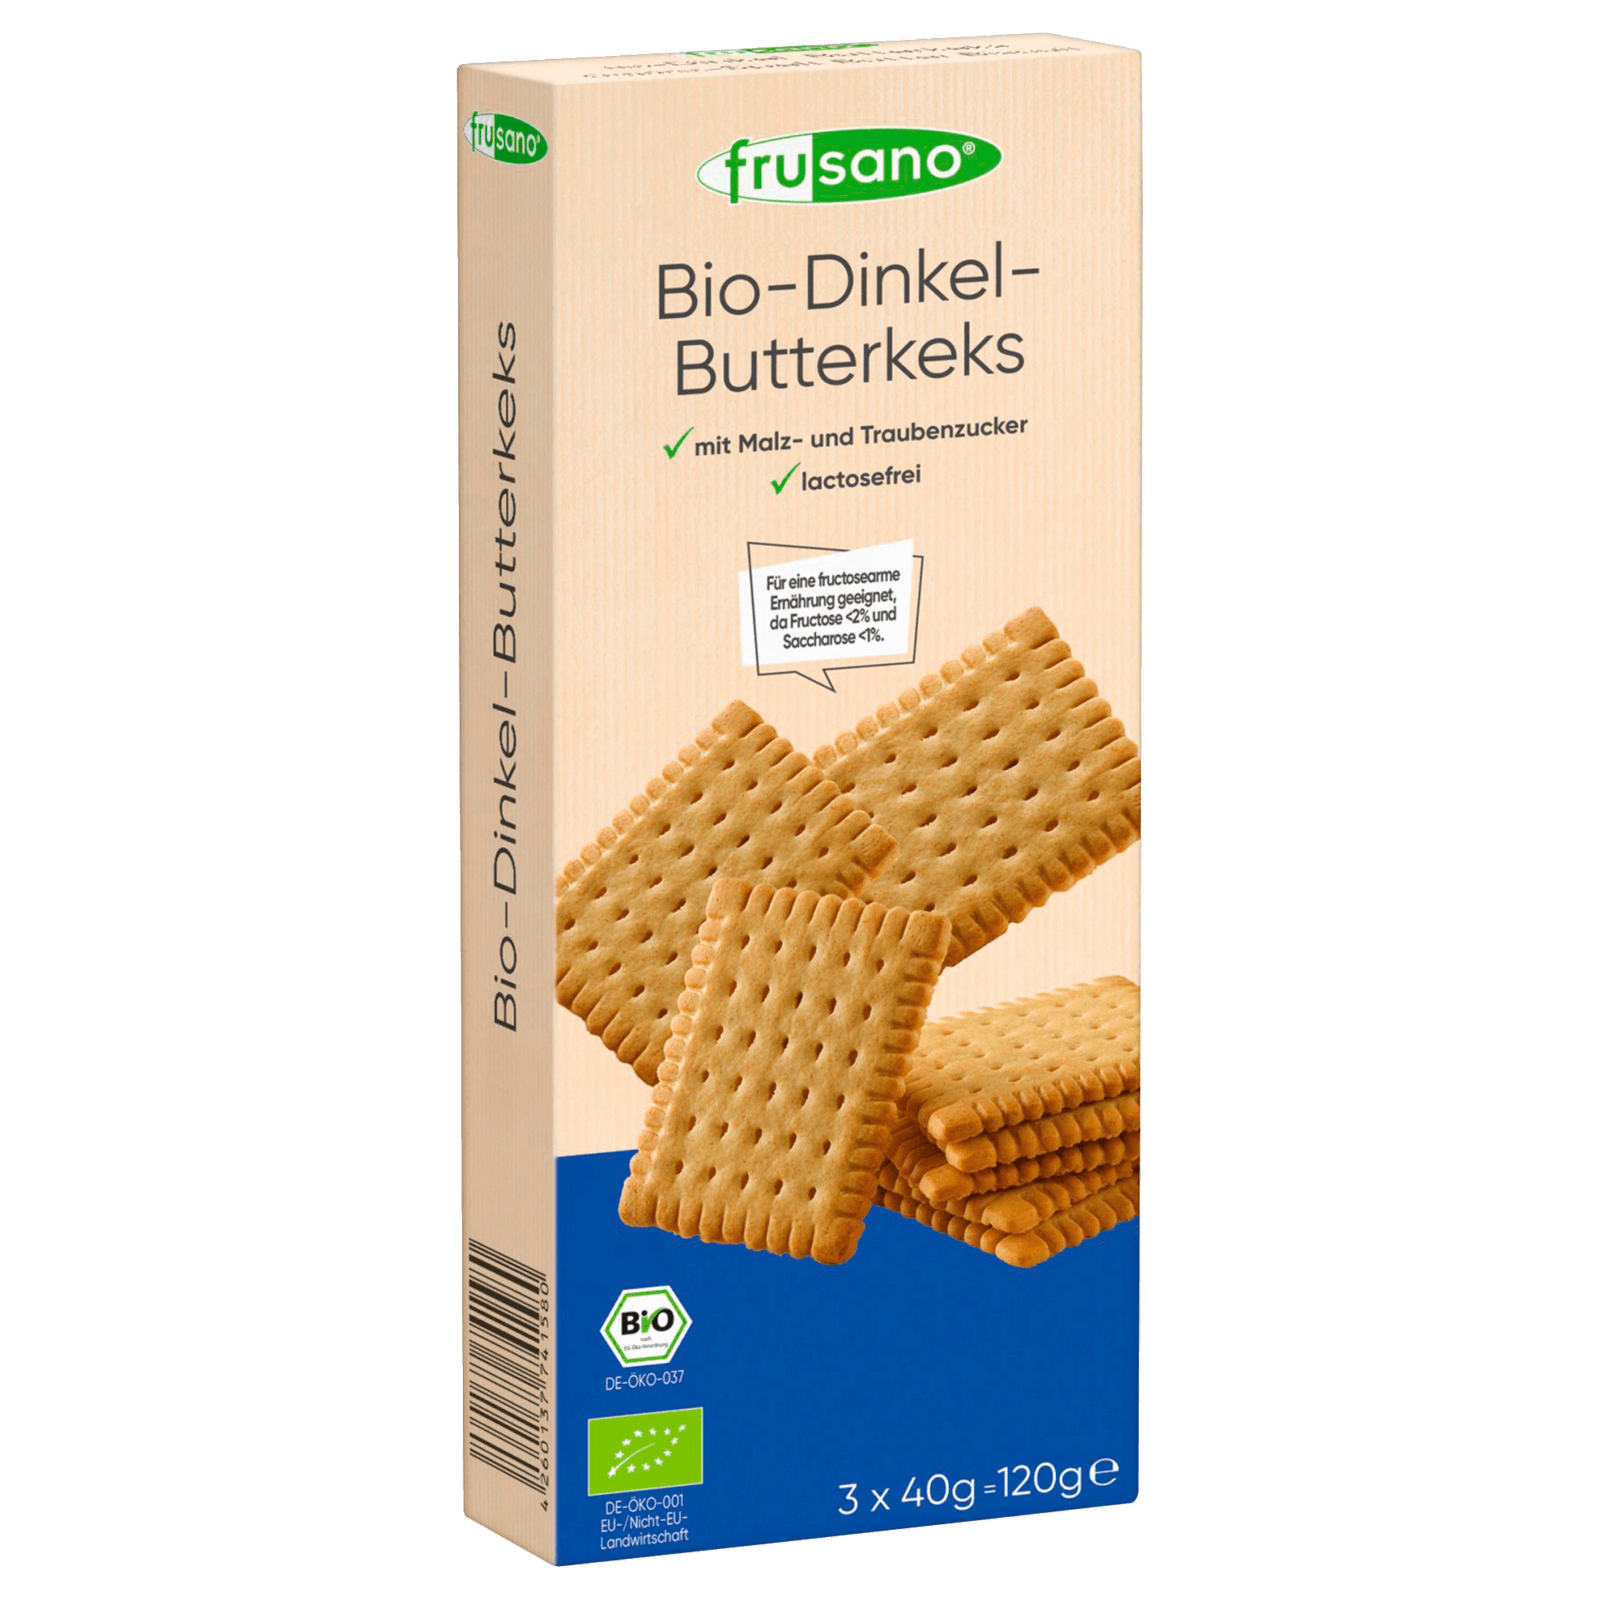 Frusano Bio Dinkel-Butterkeks 120g bei REWE online bestellen!